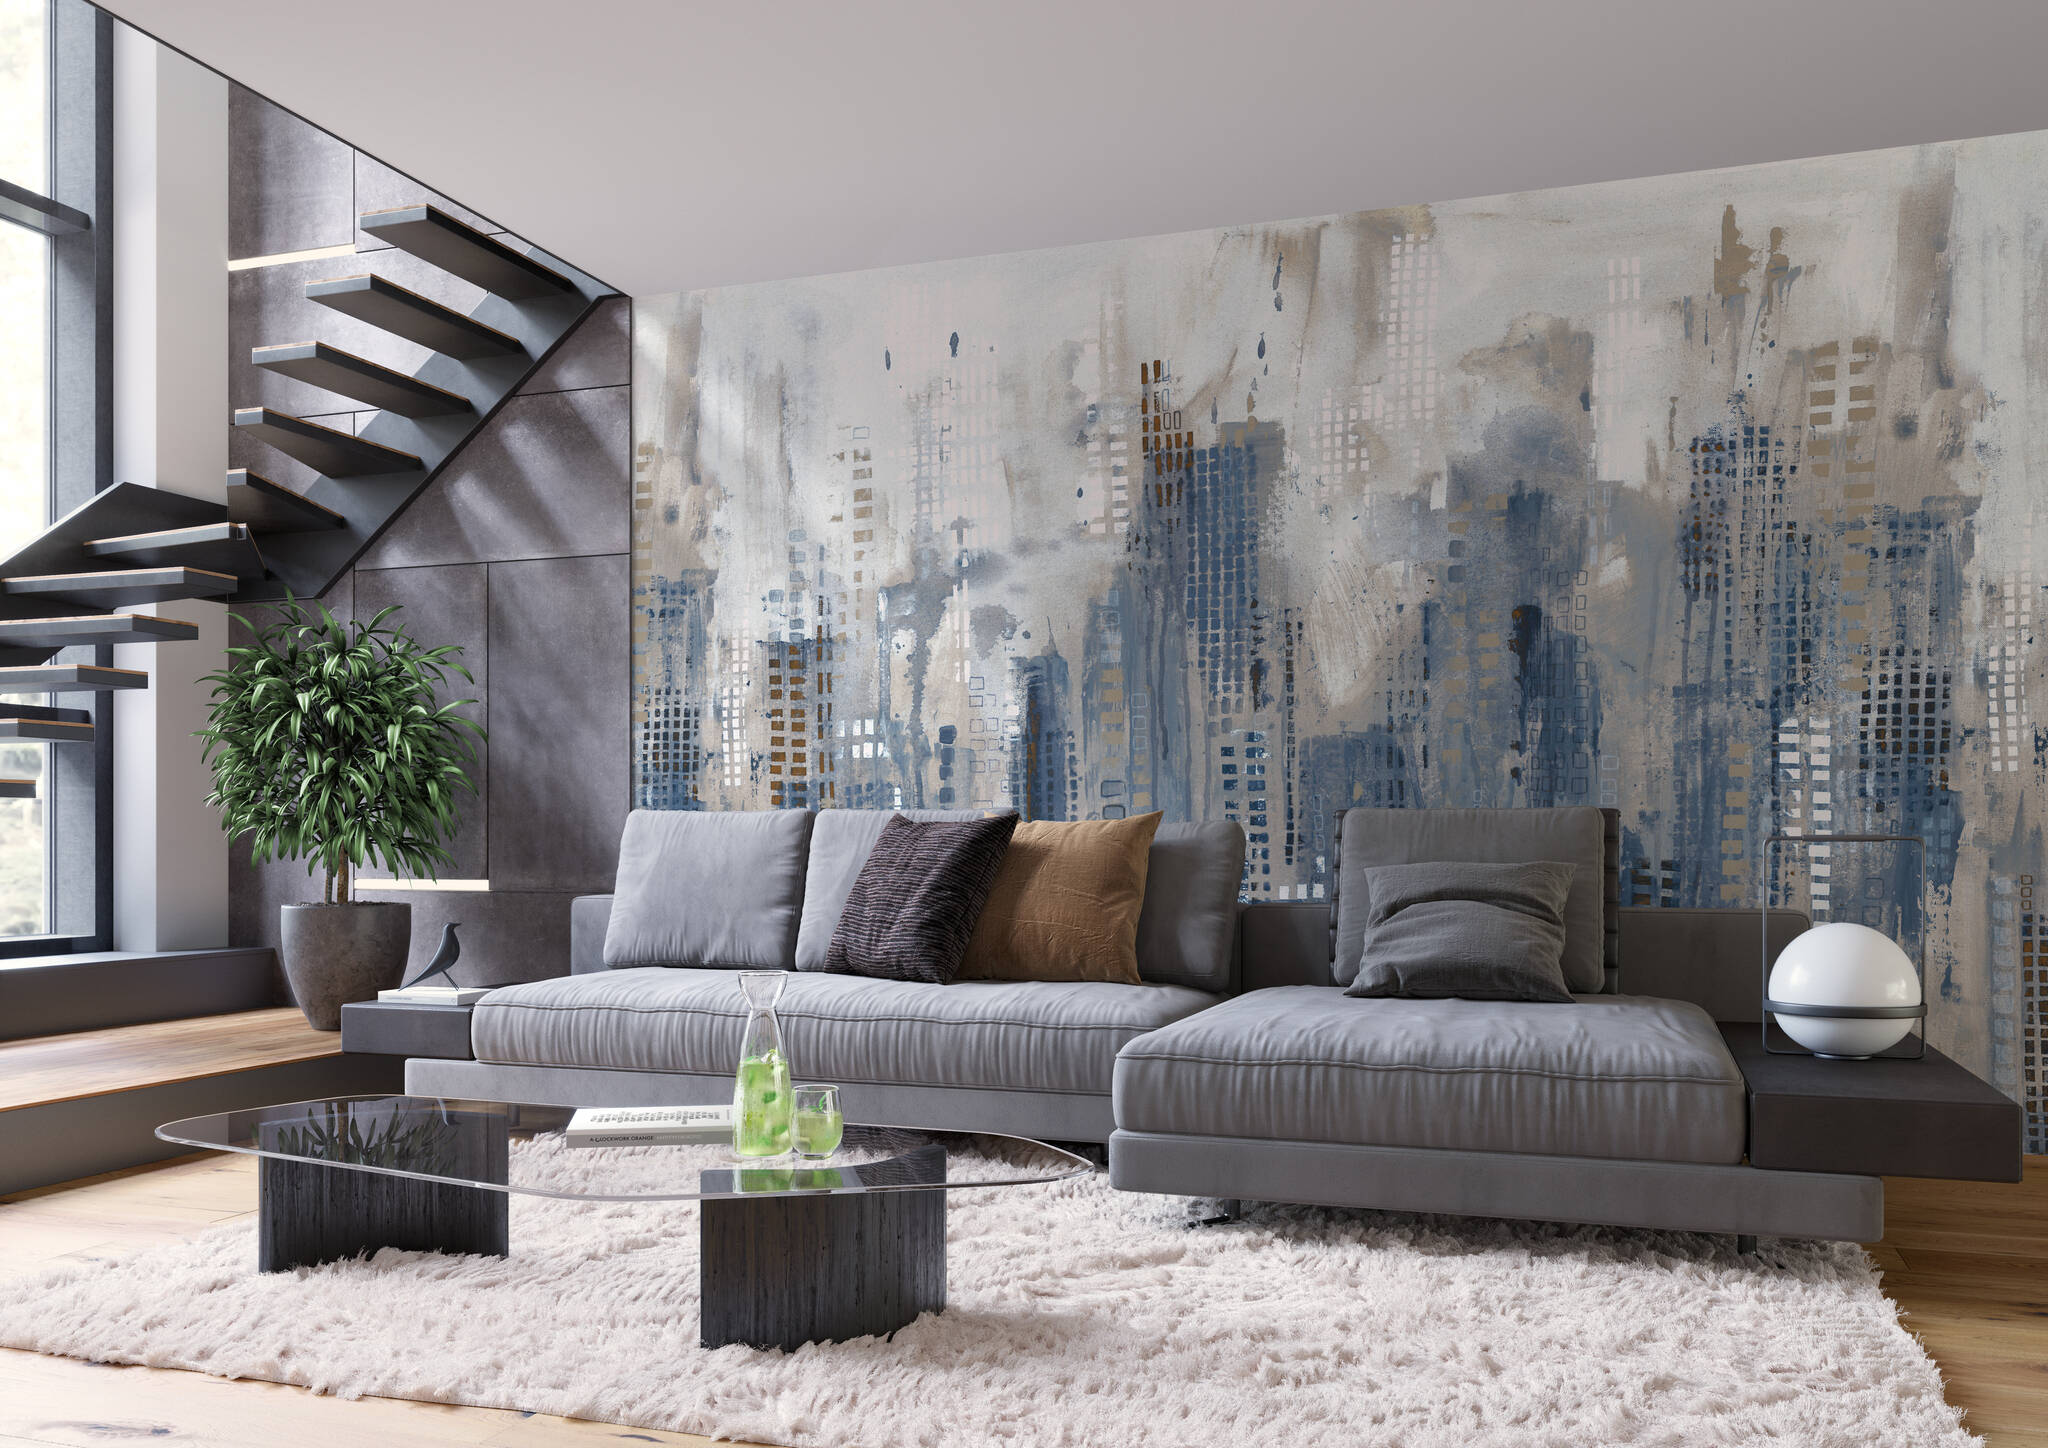 Wohnzimmer mit Wandbild - Abstrakte Hochhaus-Skyline in Blau & Grau